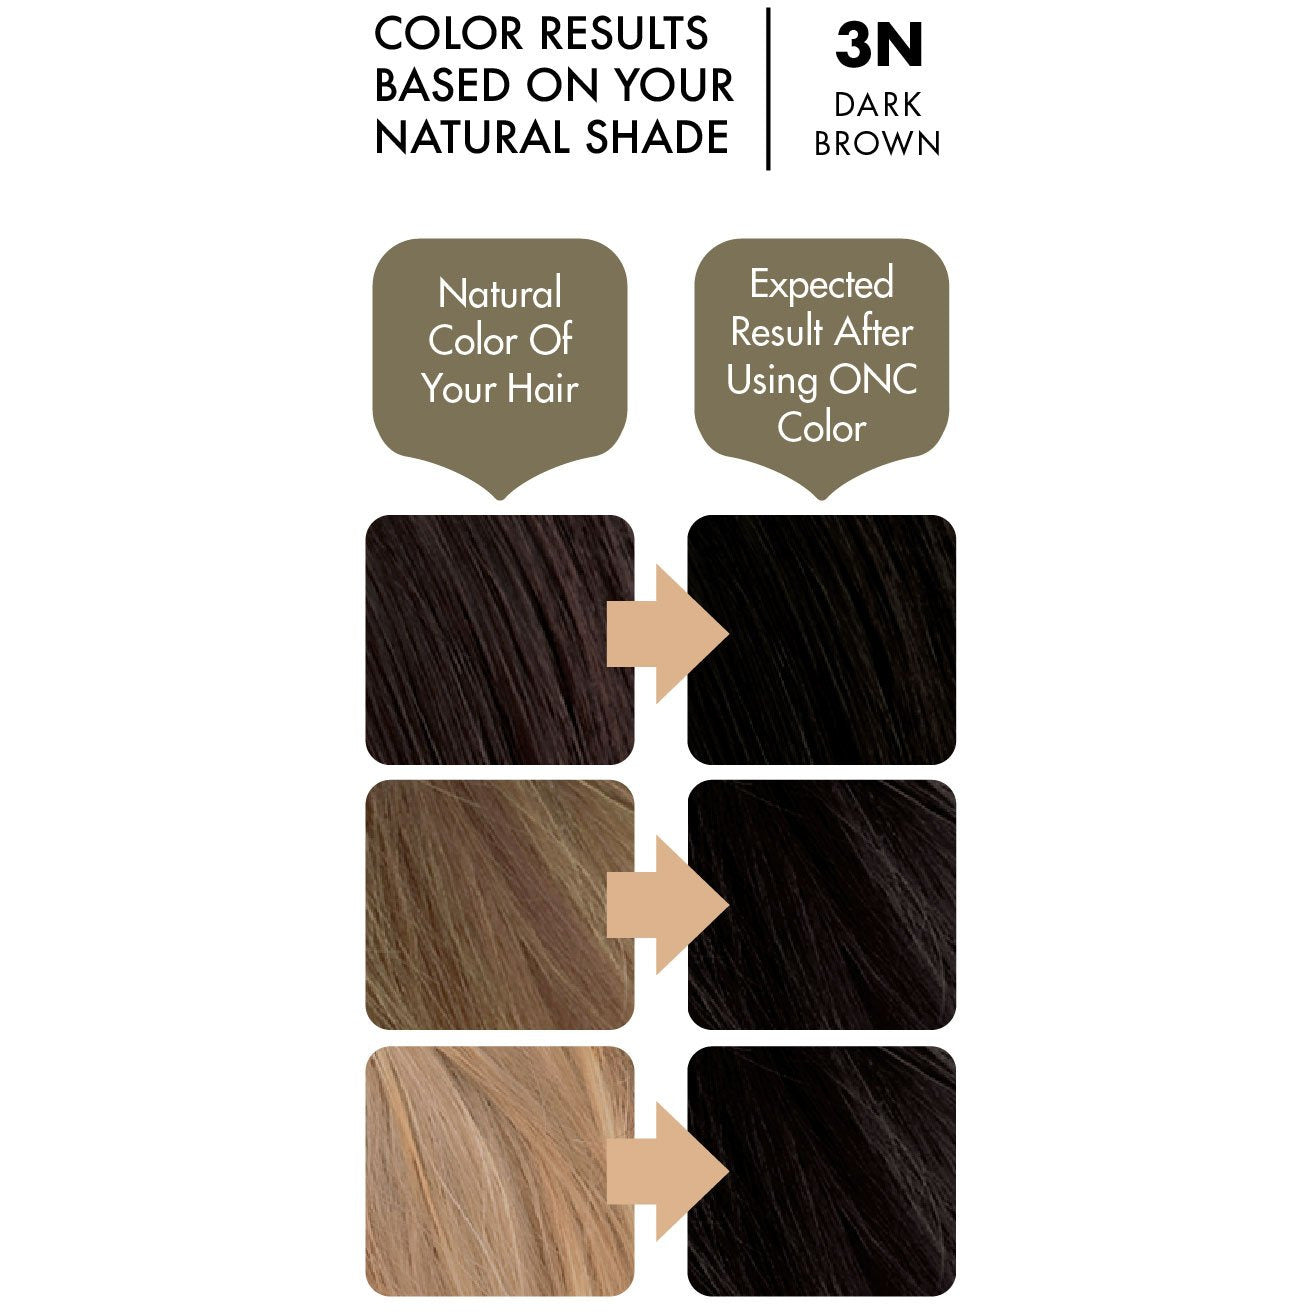 3n Natural Dark Brown Hair Dye With Organic Ingredients 120 Ml 4 Fl Oz